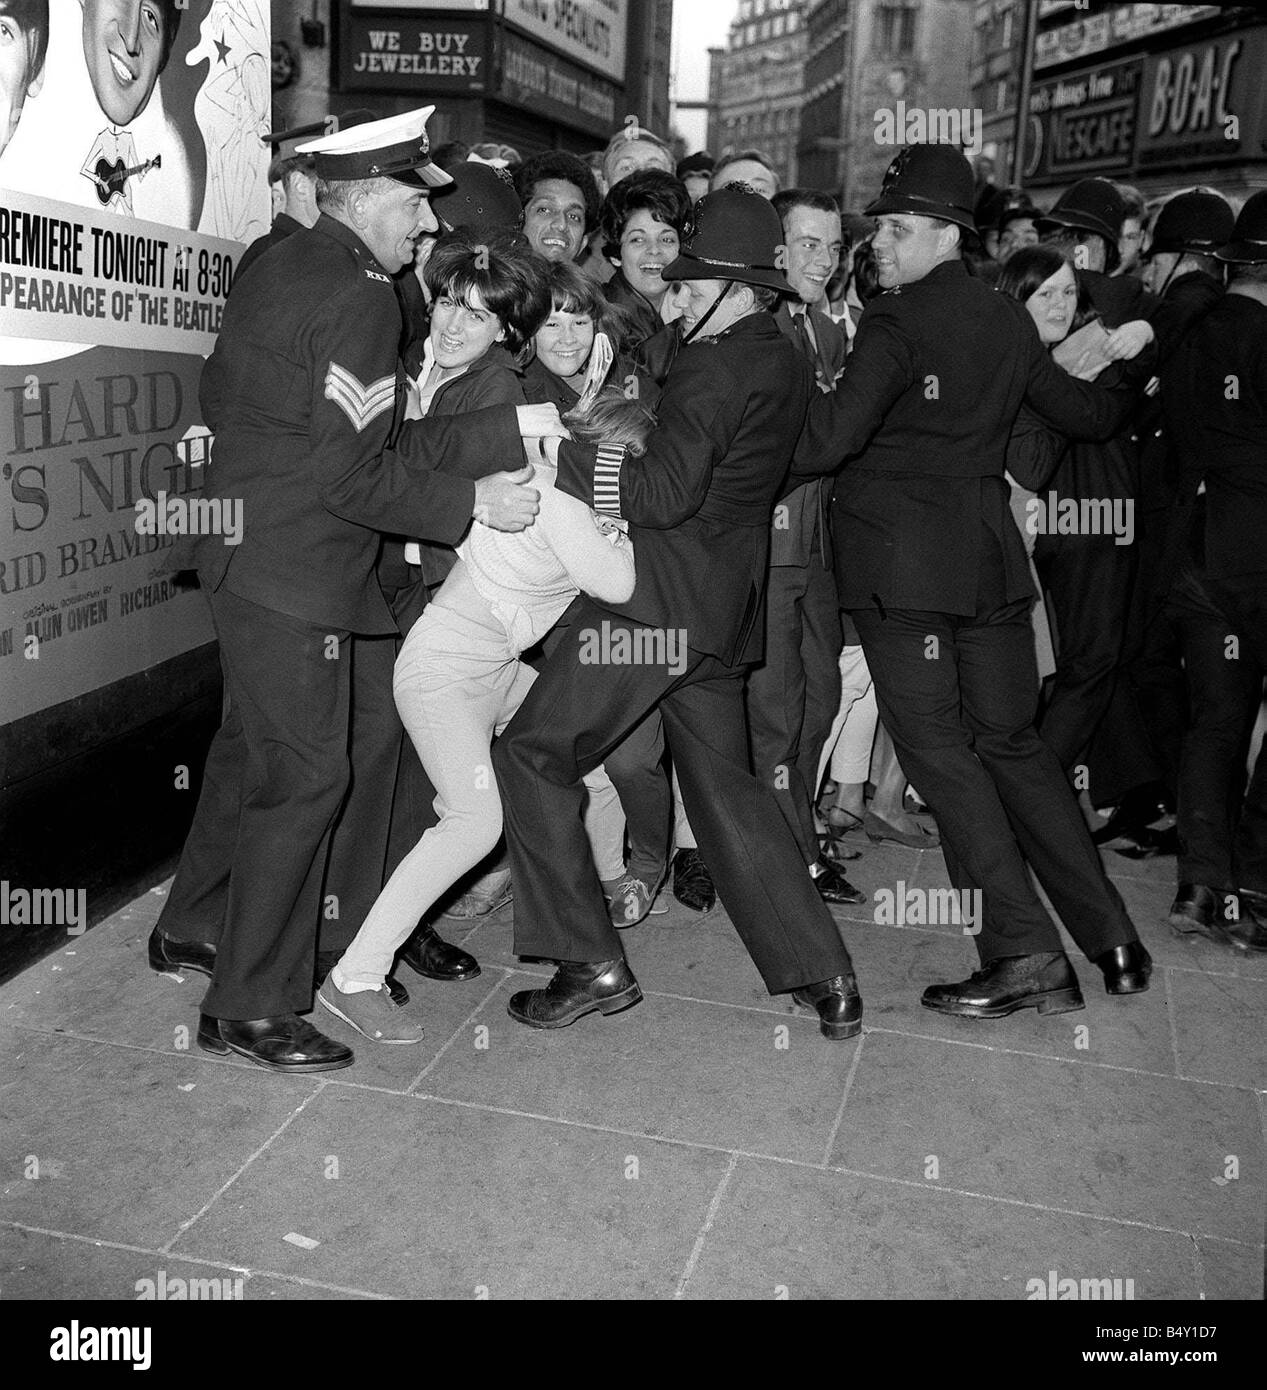 Gruppo pop The Beatles Luglio 1964 Paul McCartney Ringo Starr John Lennon George Harrison Beatles Premiere del film di una dura giornata s notte al London Palladium la polizia che trattiene la folla di tifosi che sono in attesa di vedere i Beatles Foto Stock